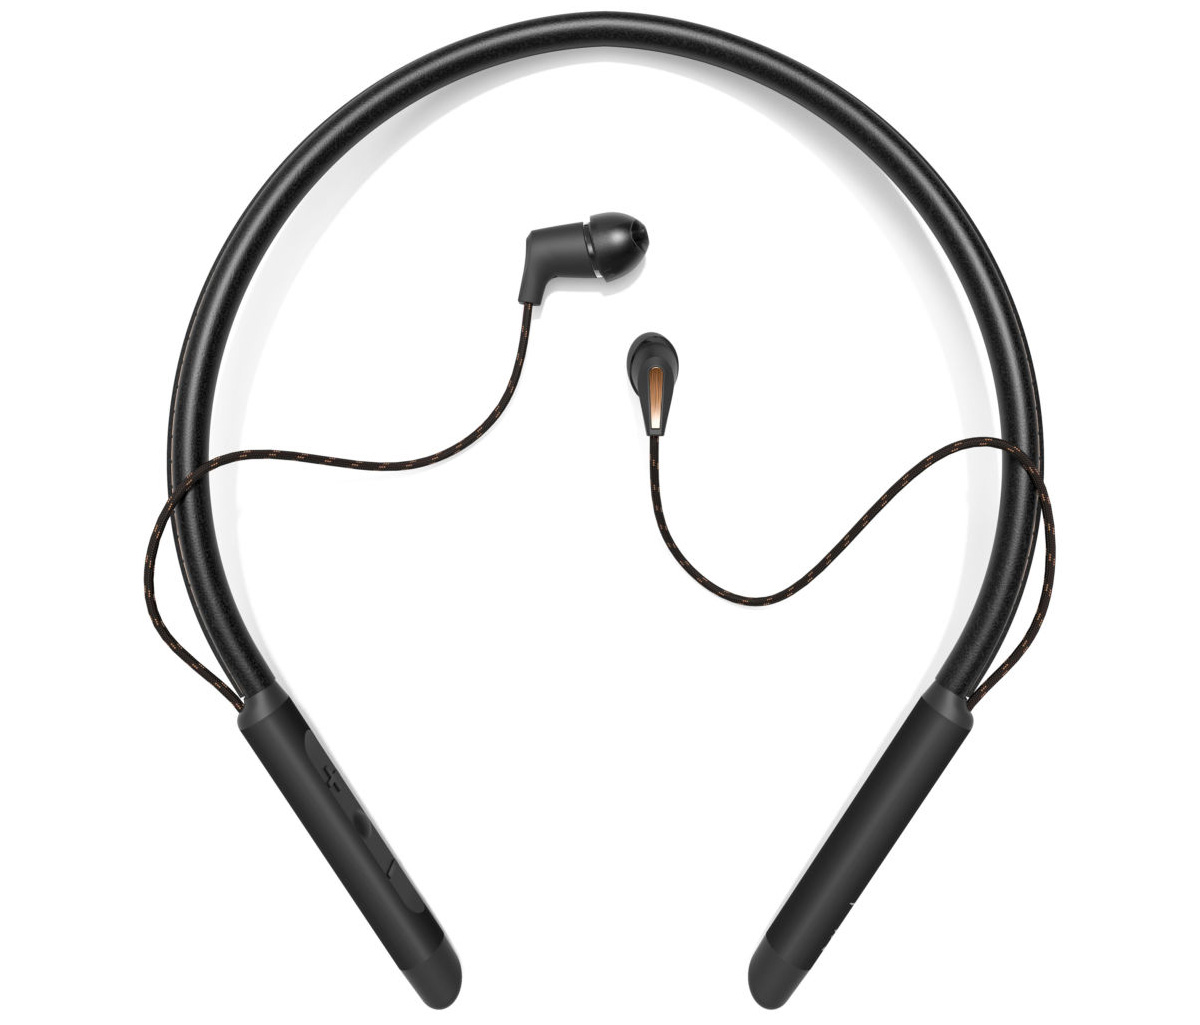 Thiết kế hiện đại của Tai nghe Bluetooth T5 Neckband Black-Klipsch